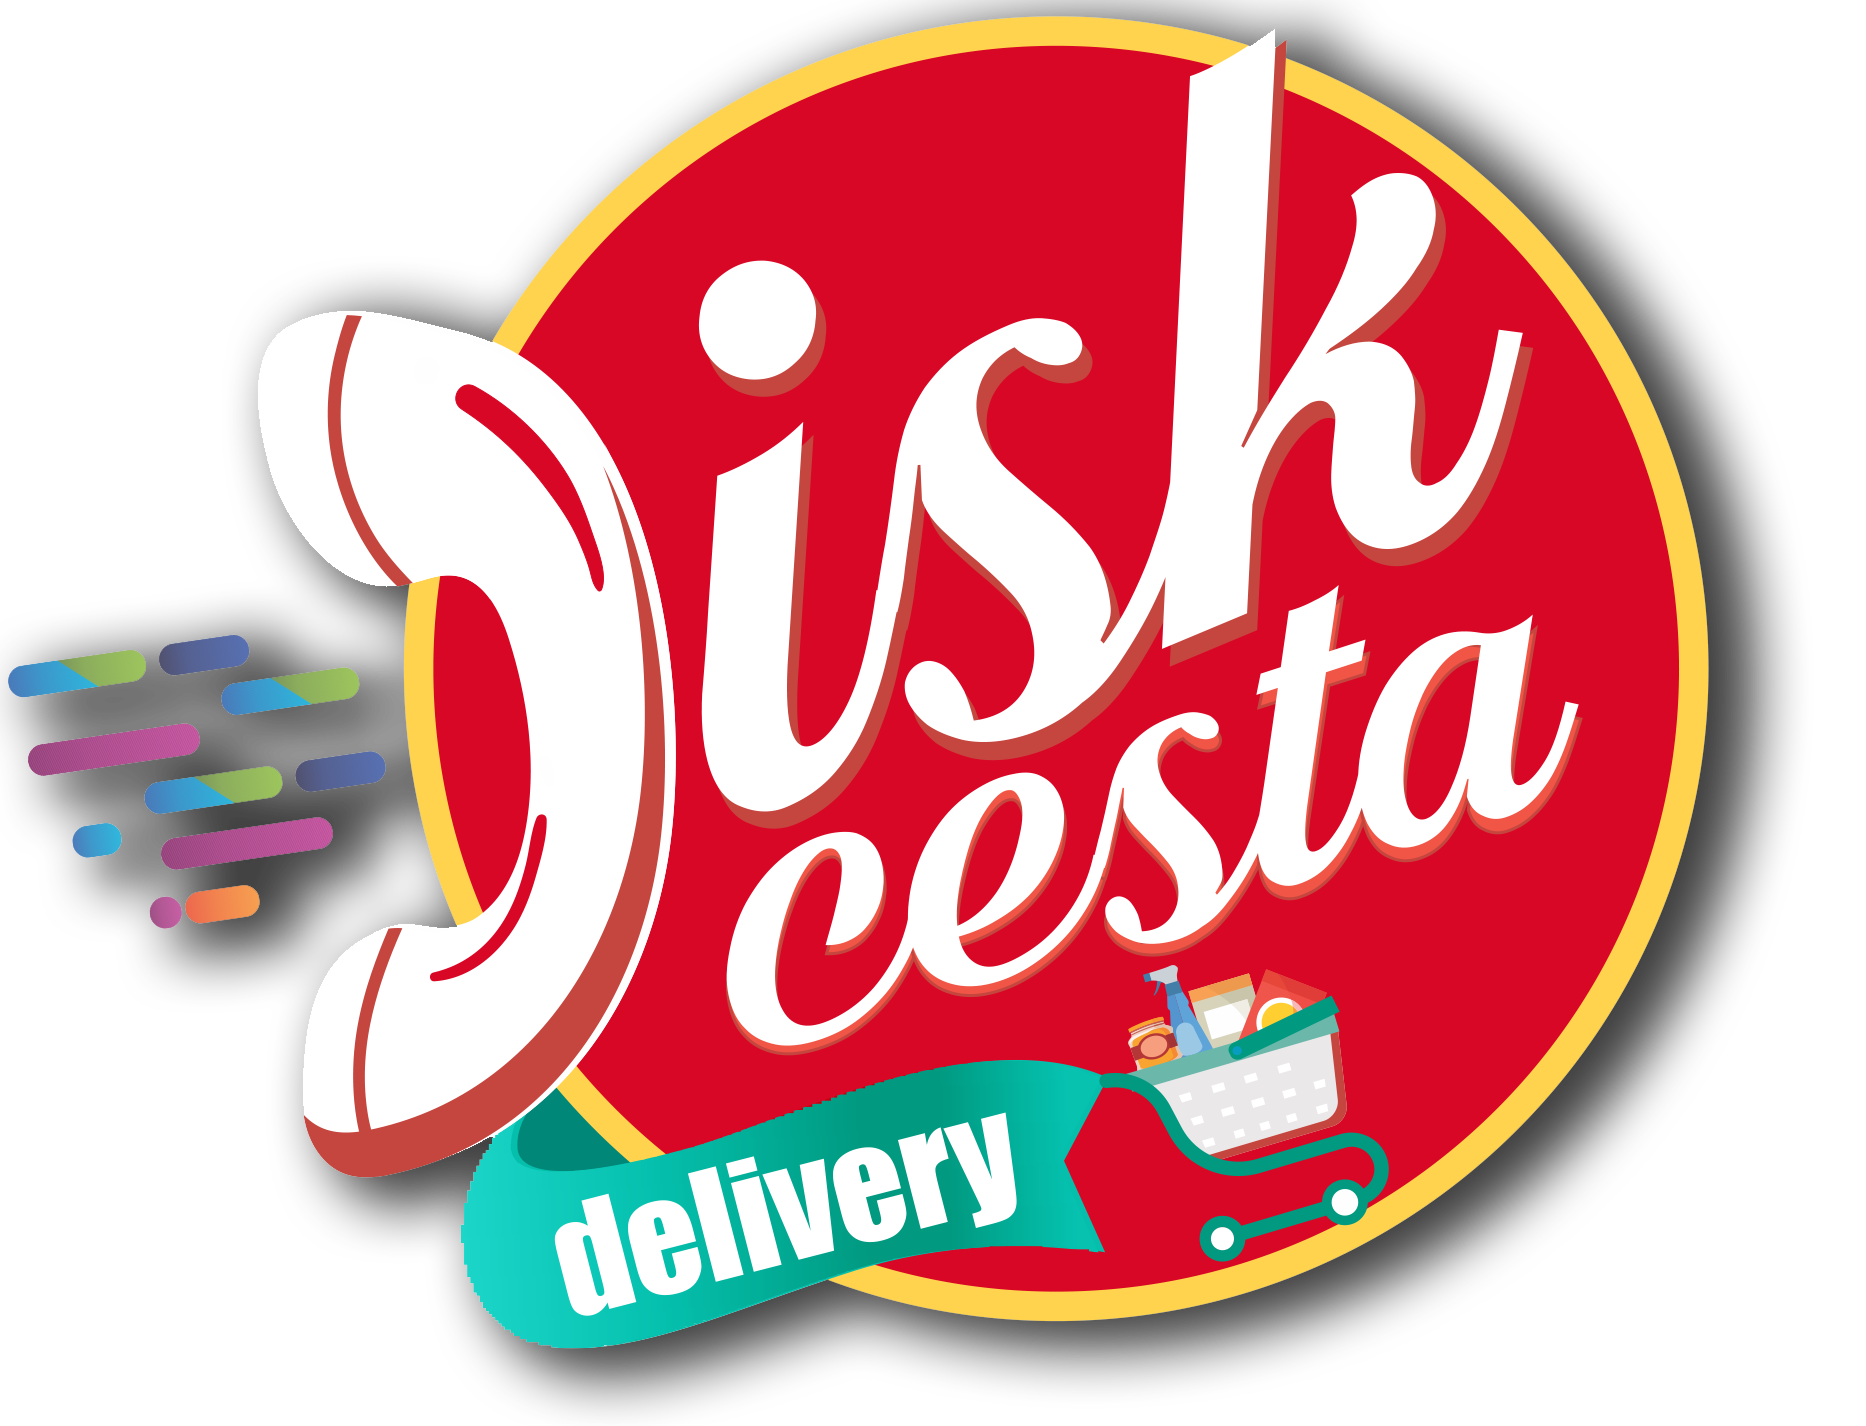 Disk Cesta Delivery